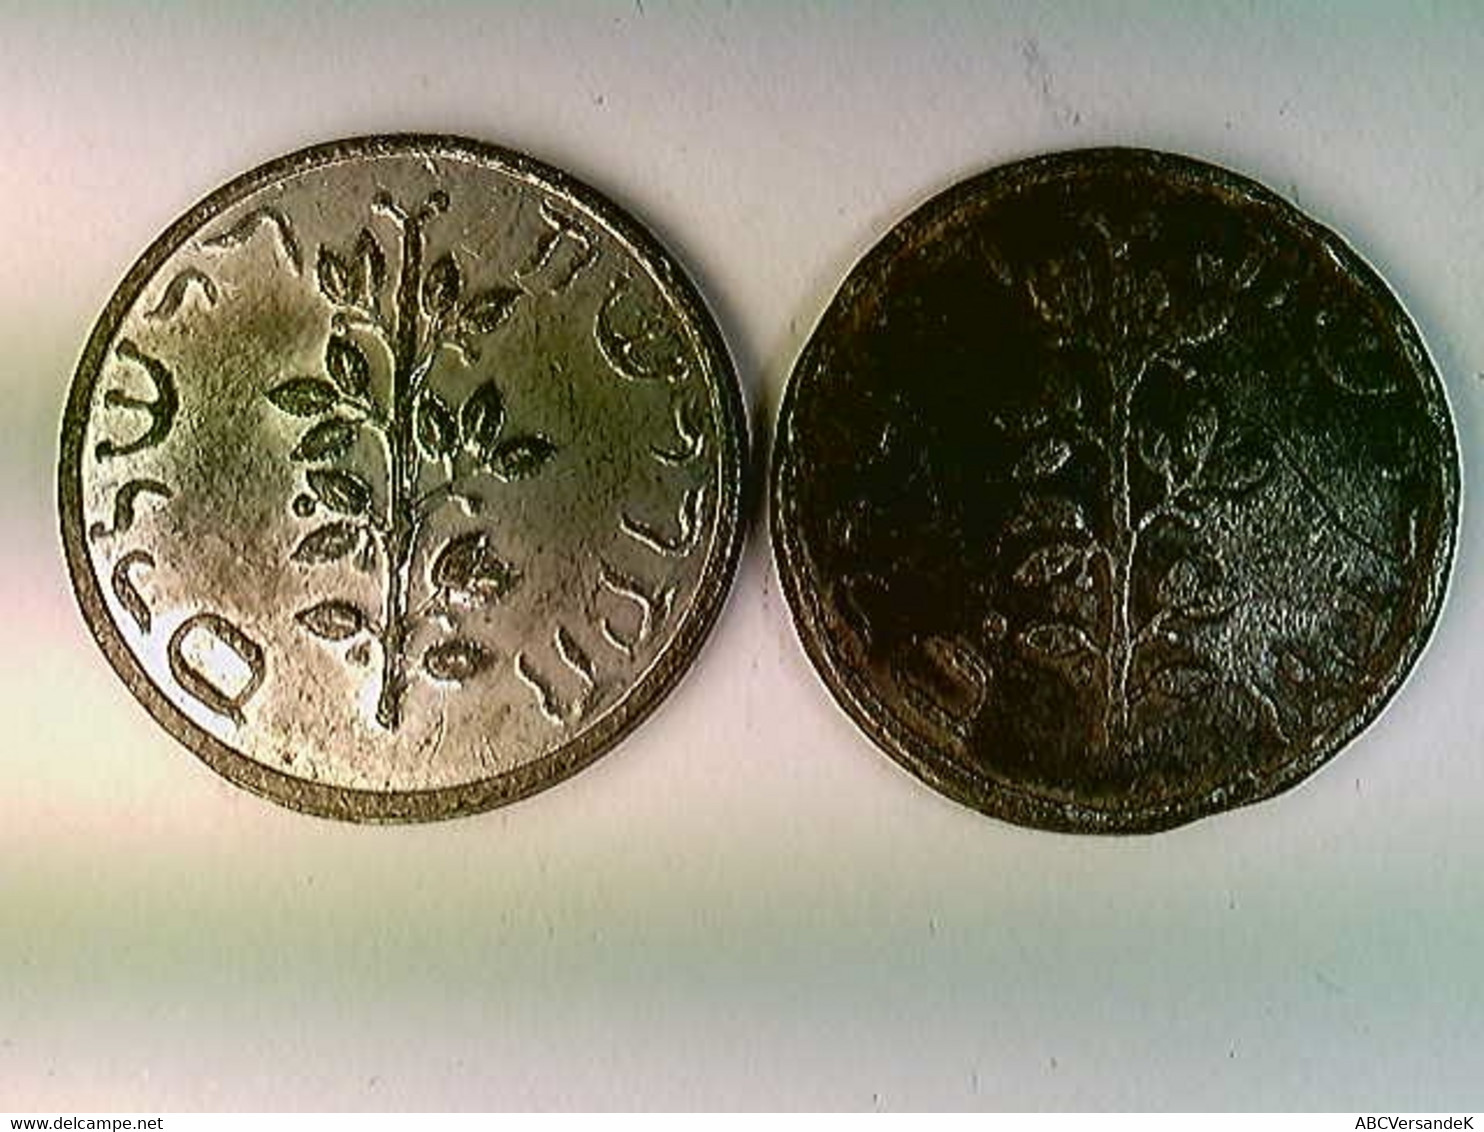 Münzen, 2x Görlitzer Schekel, 19. Jahrh., Judaika, Amphore, Weihrauch, Olivenzweig, Konvolut - Numismatics